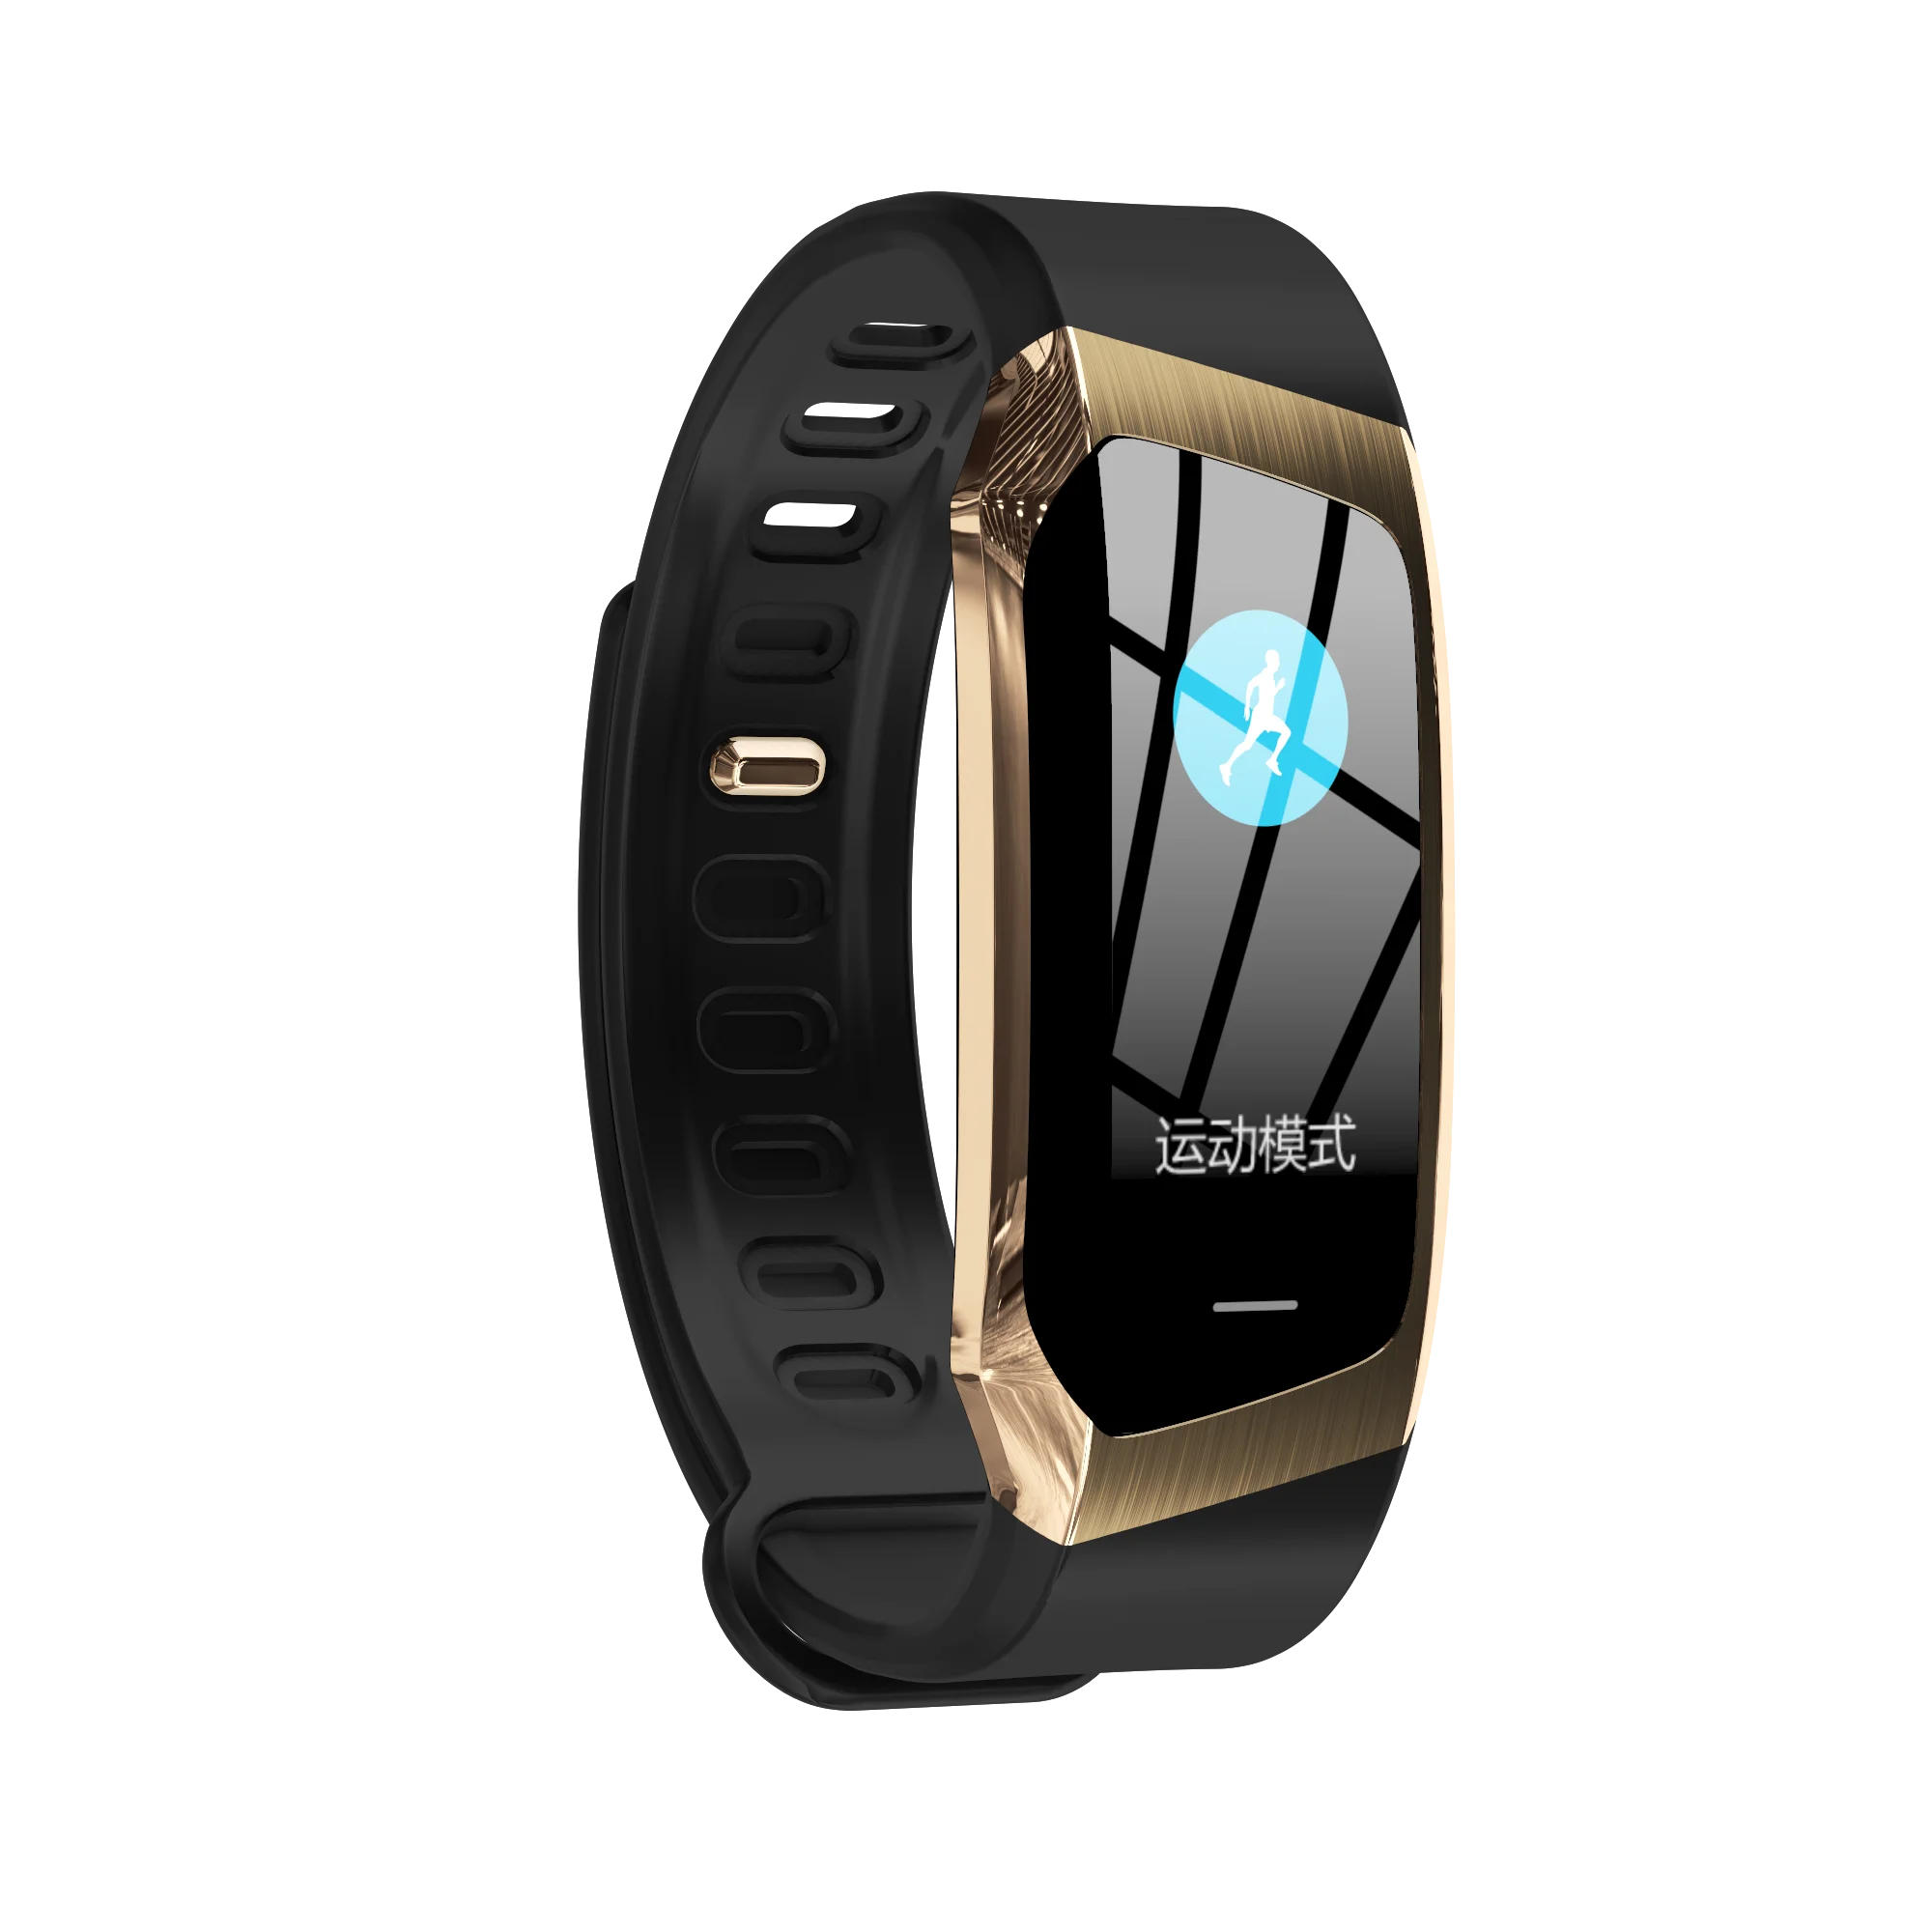 BUENOMOB Smart Watch Blood Pressure Heart Rate Monitor Fitness Activity Tracker smartwatch Waterproof Men Women Sport Bracelet |